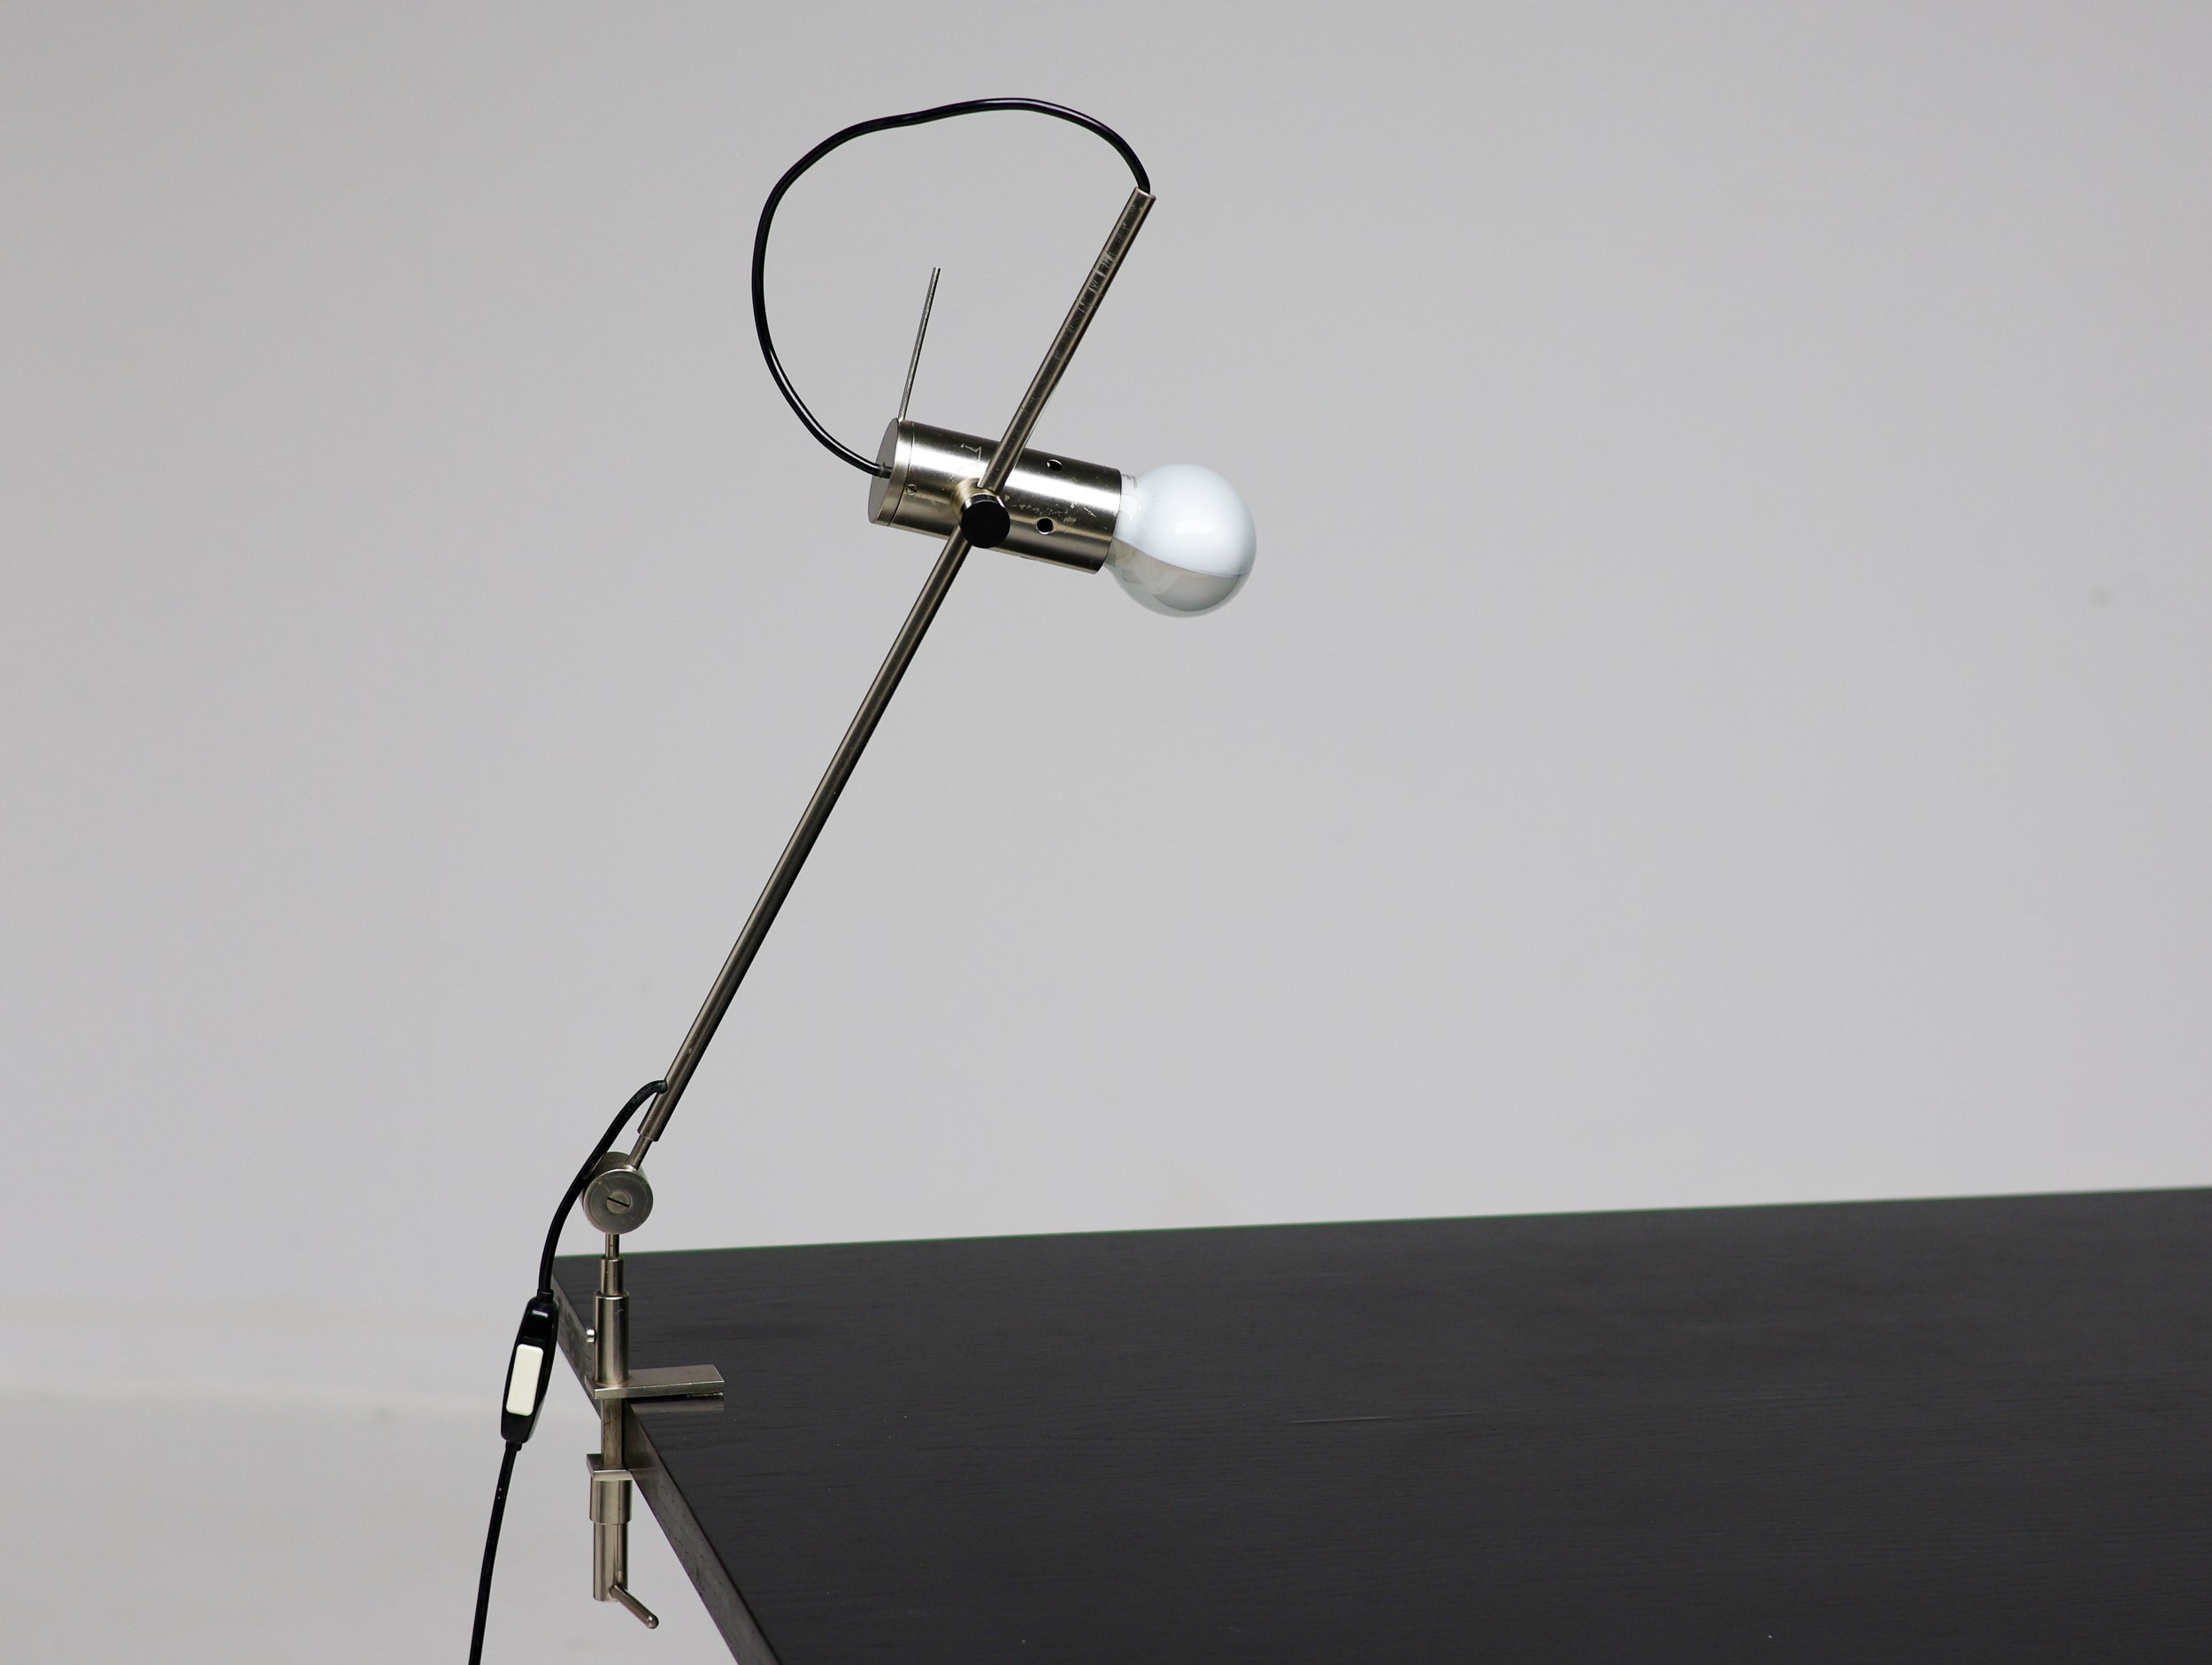 Lampadaire, applique et lampe de table assortis 387 originaux des années 1950, conçus par Tito Agnoli pour O-Luce, en acier nickelé. Le lampadaire avec la base en travertin caractéristique.
Bel état d'origine, la perche permettant de faire pivoter